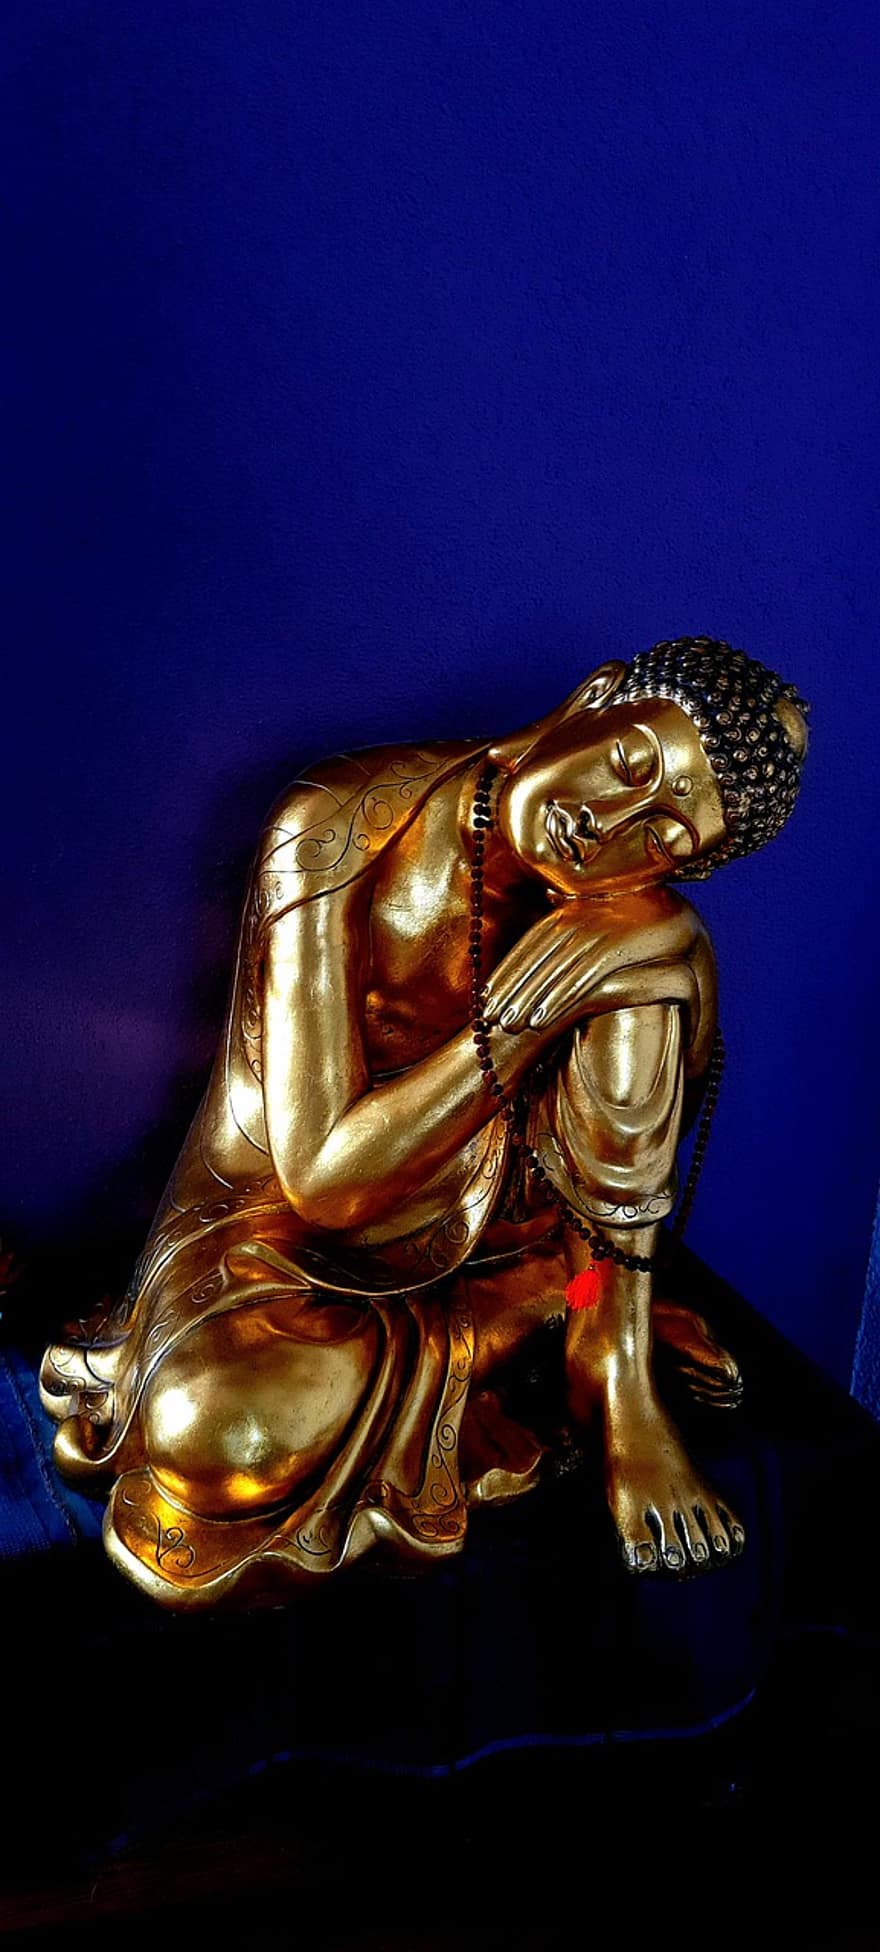 Buddha, Statue, Yoga, Meditation, Gold, Zen, Entspannen Sie Sich, Entspannung, Religion, Buddhismus, Spiritualität